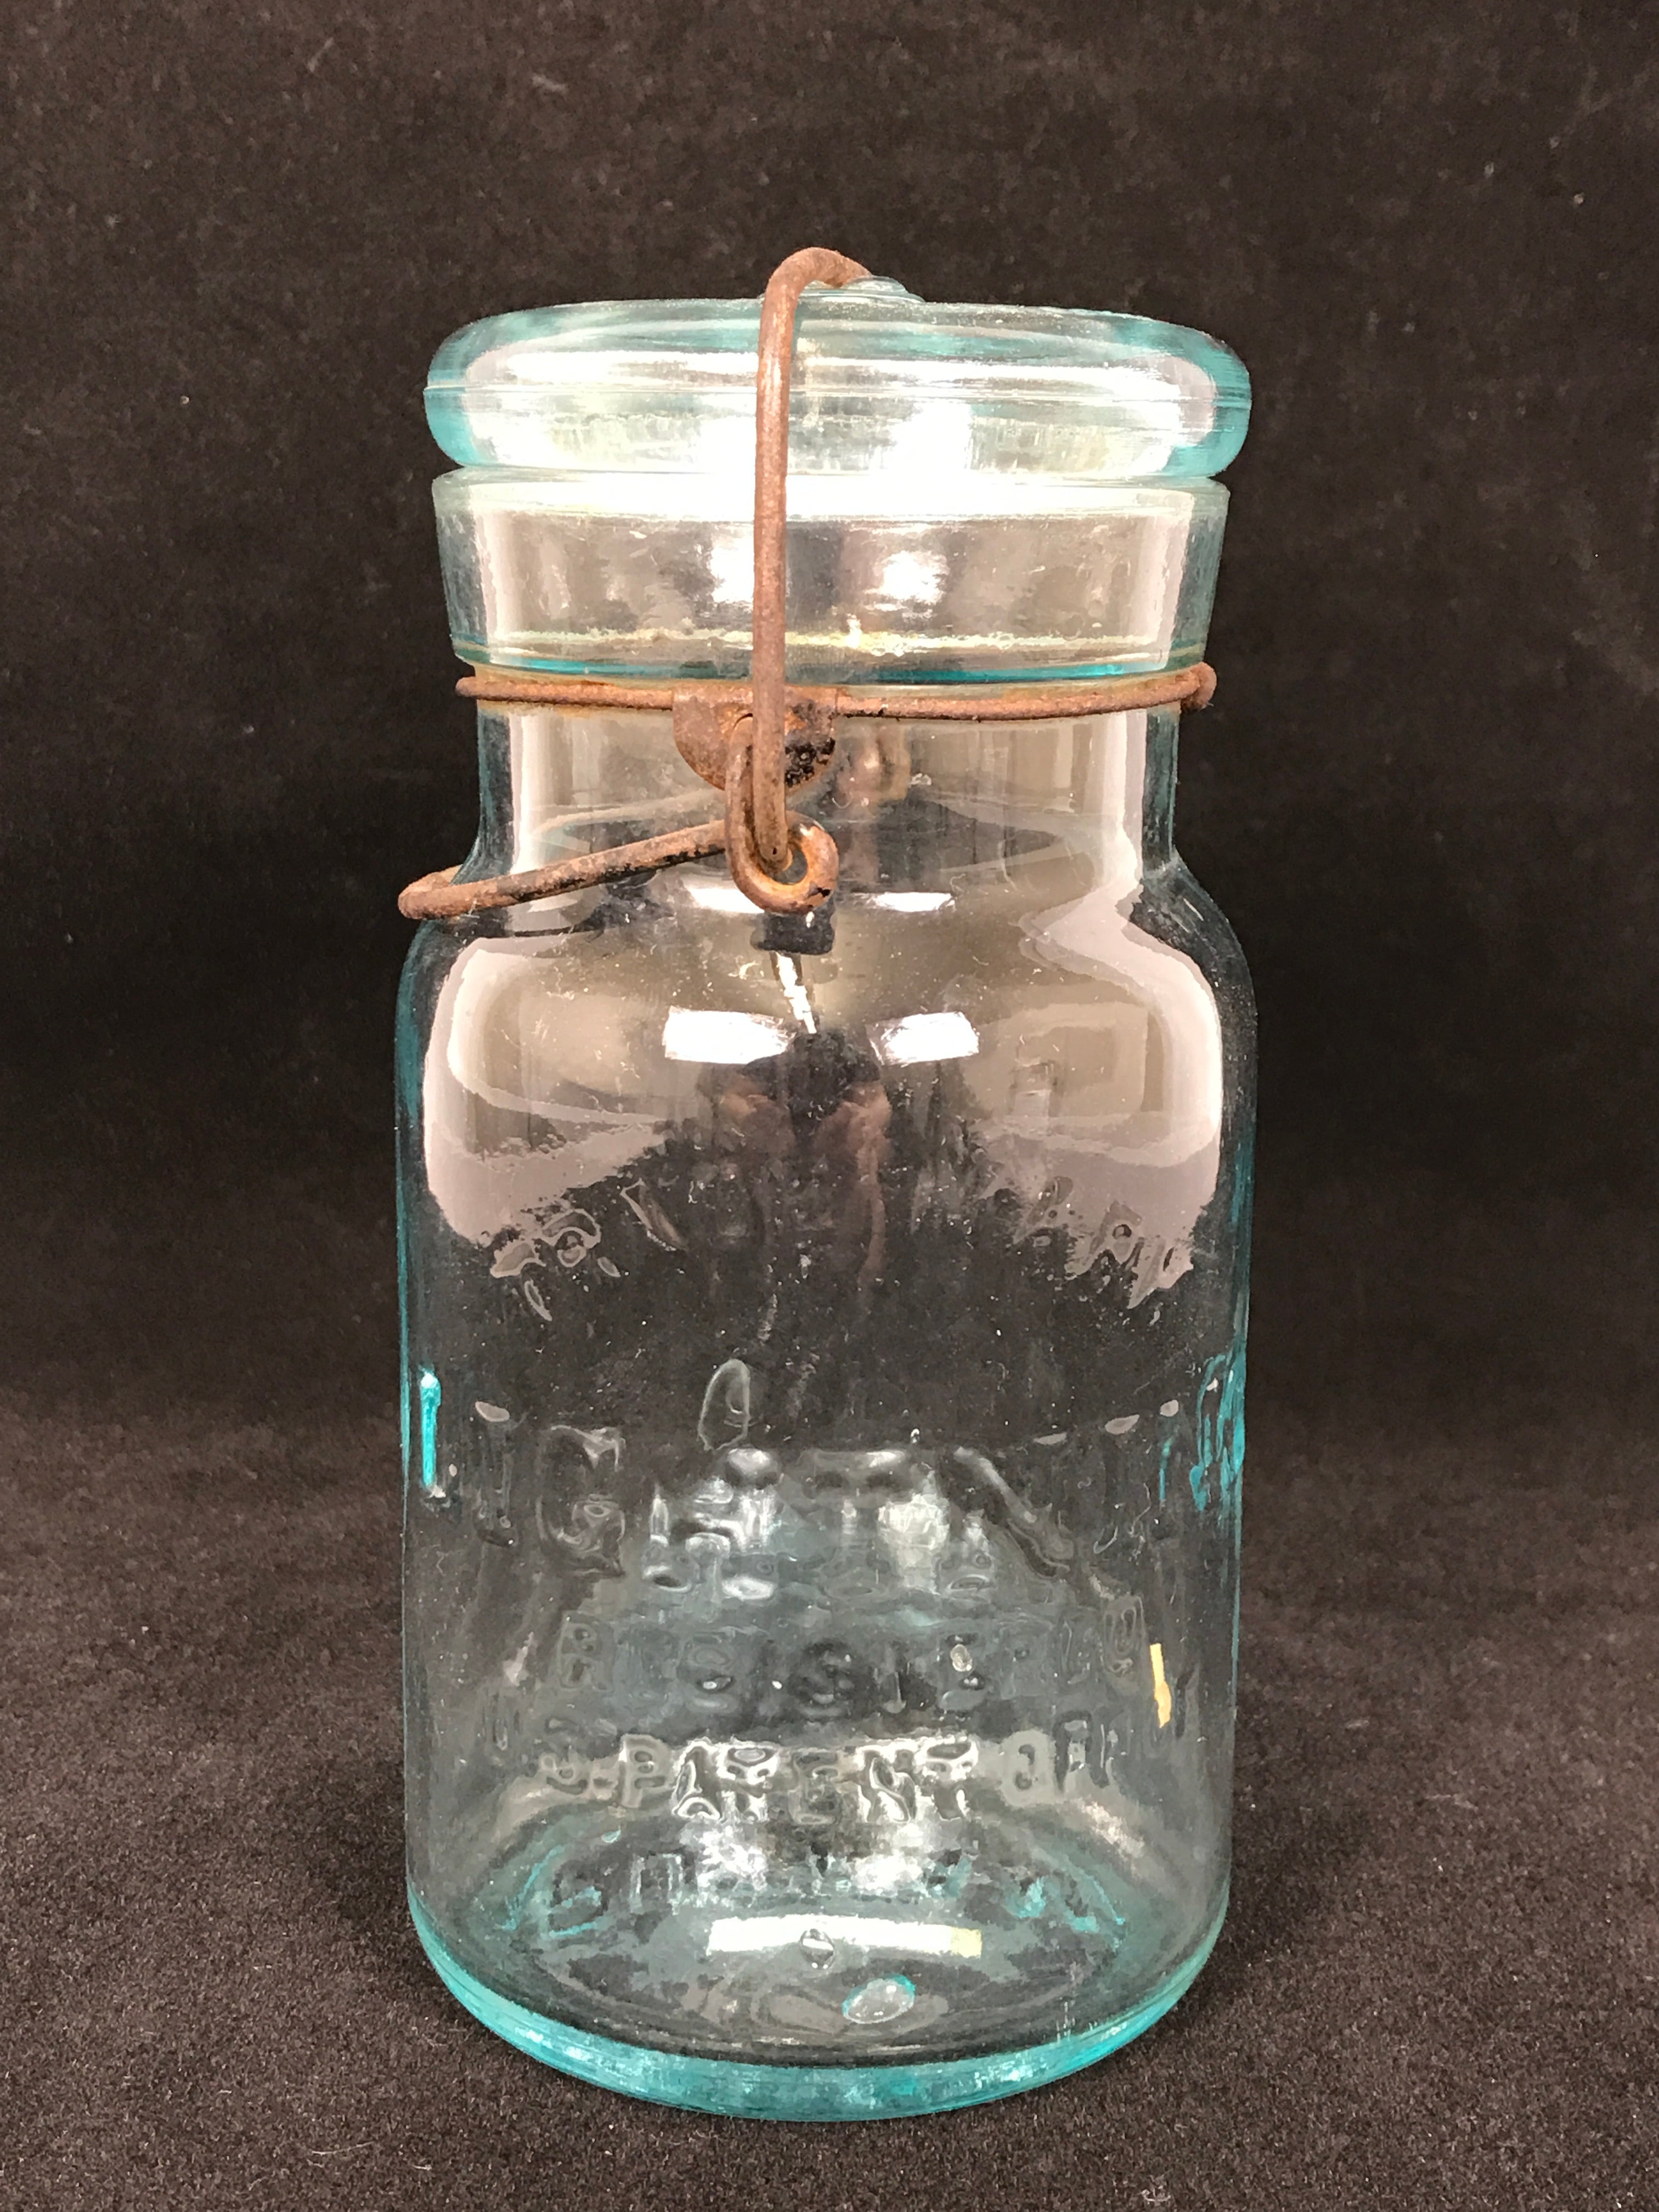 Antique Putnam Lightning 965 Fruit Jar with Glass Lid